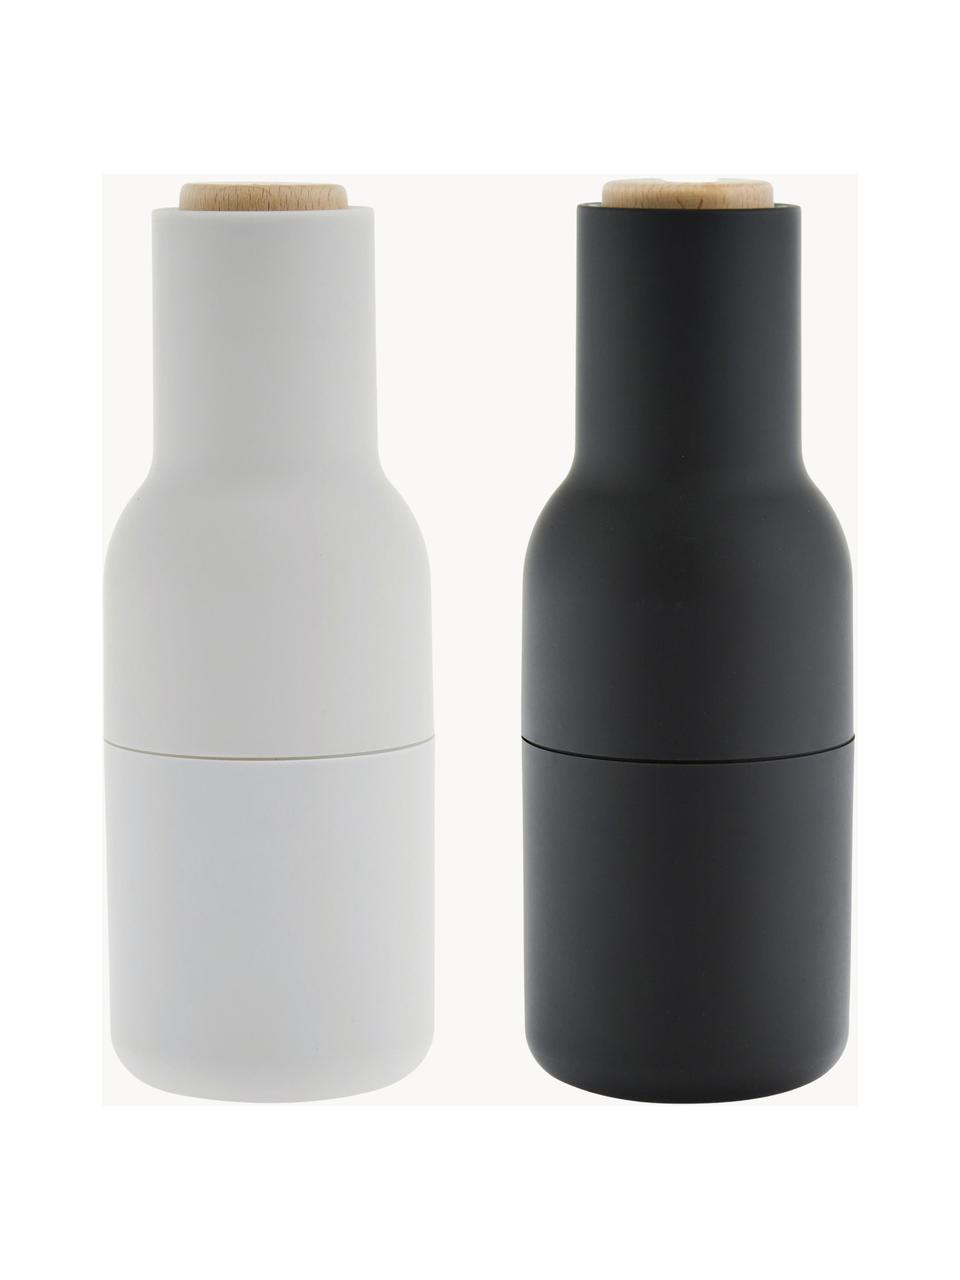 Sada designových mlýnků na sůl a pepř s dřevěnými víčky Bottle Grinder, 2 díly, Antracitová, bílá, dřevo, Ø 8 cm, V 21 cm